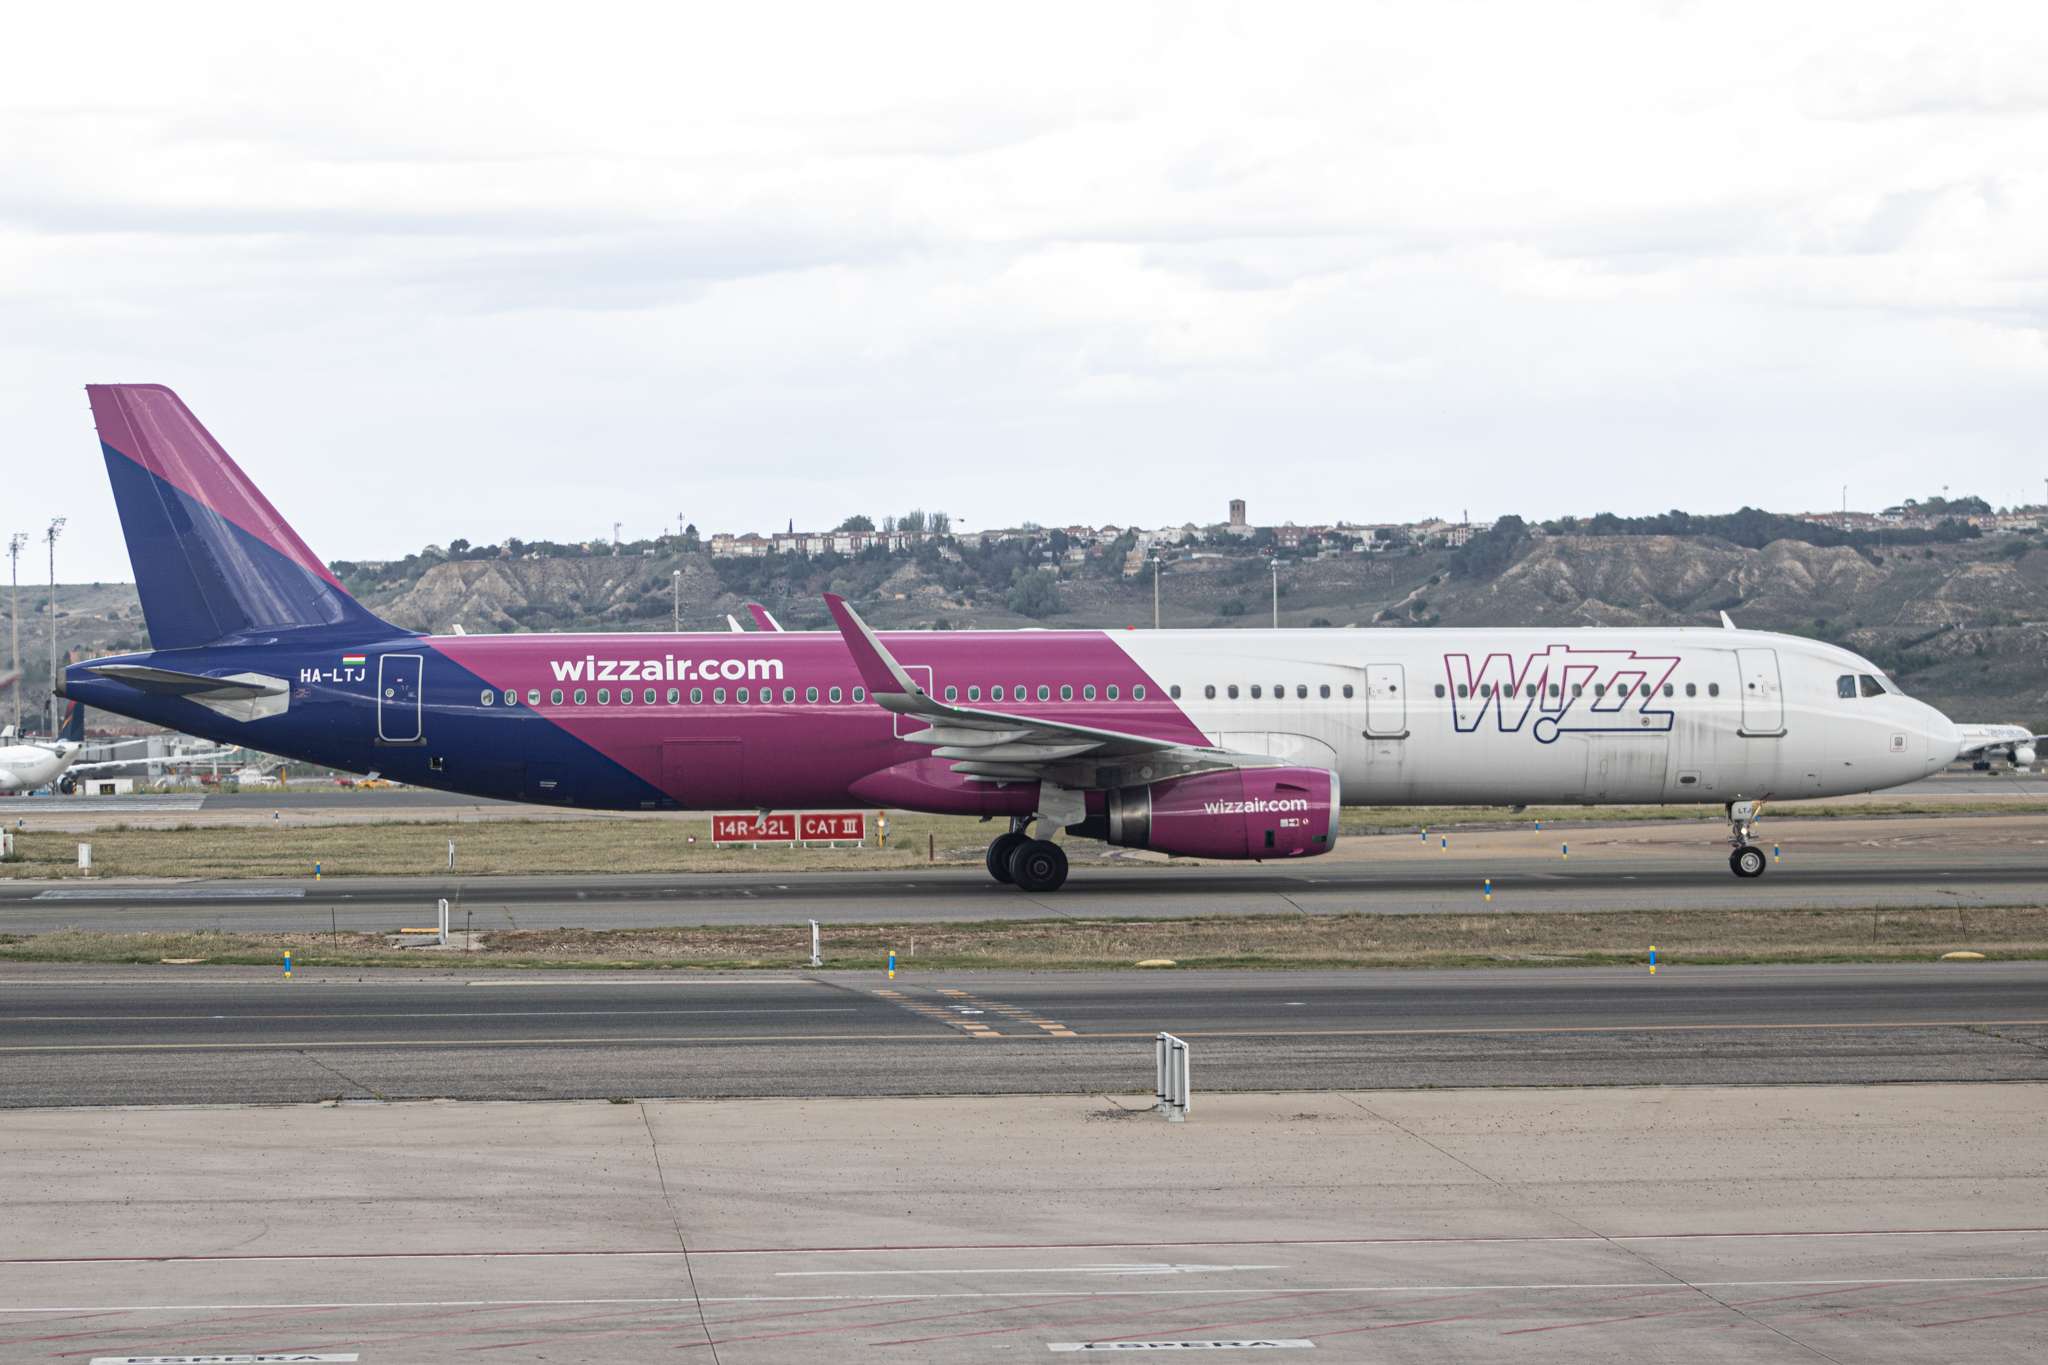 Wizz Air Abu Dhabi Receives 11th Aircraft, Growth Continues